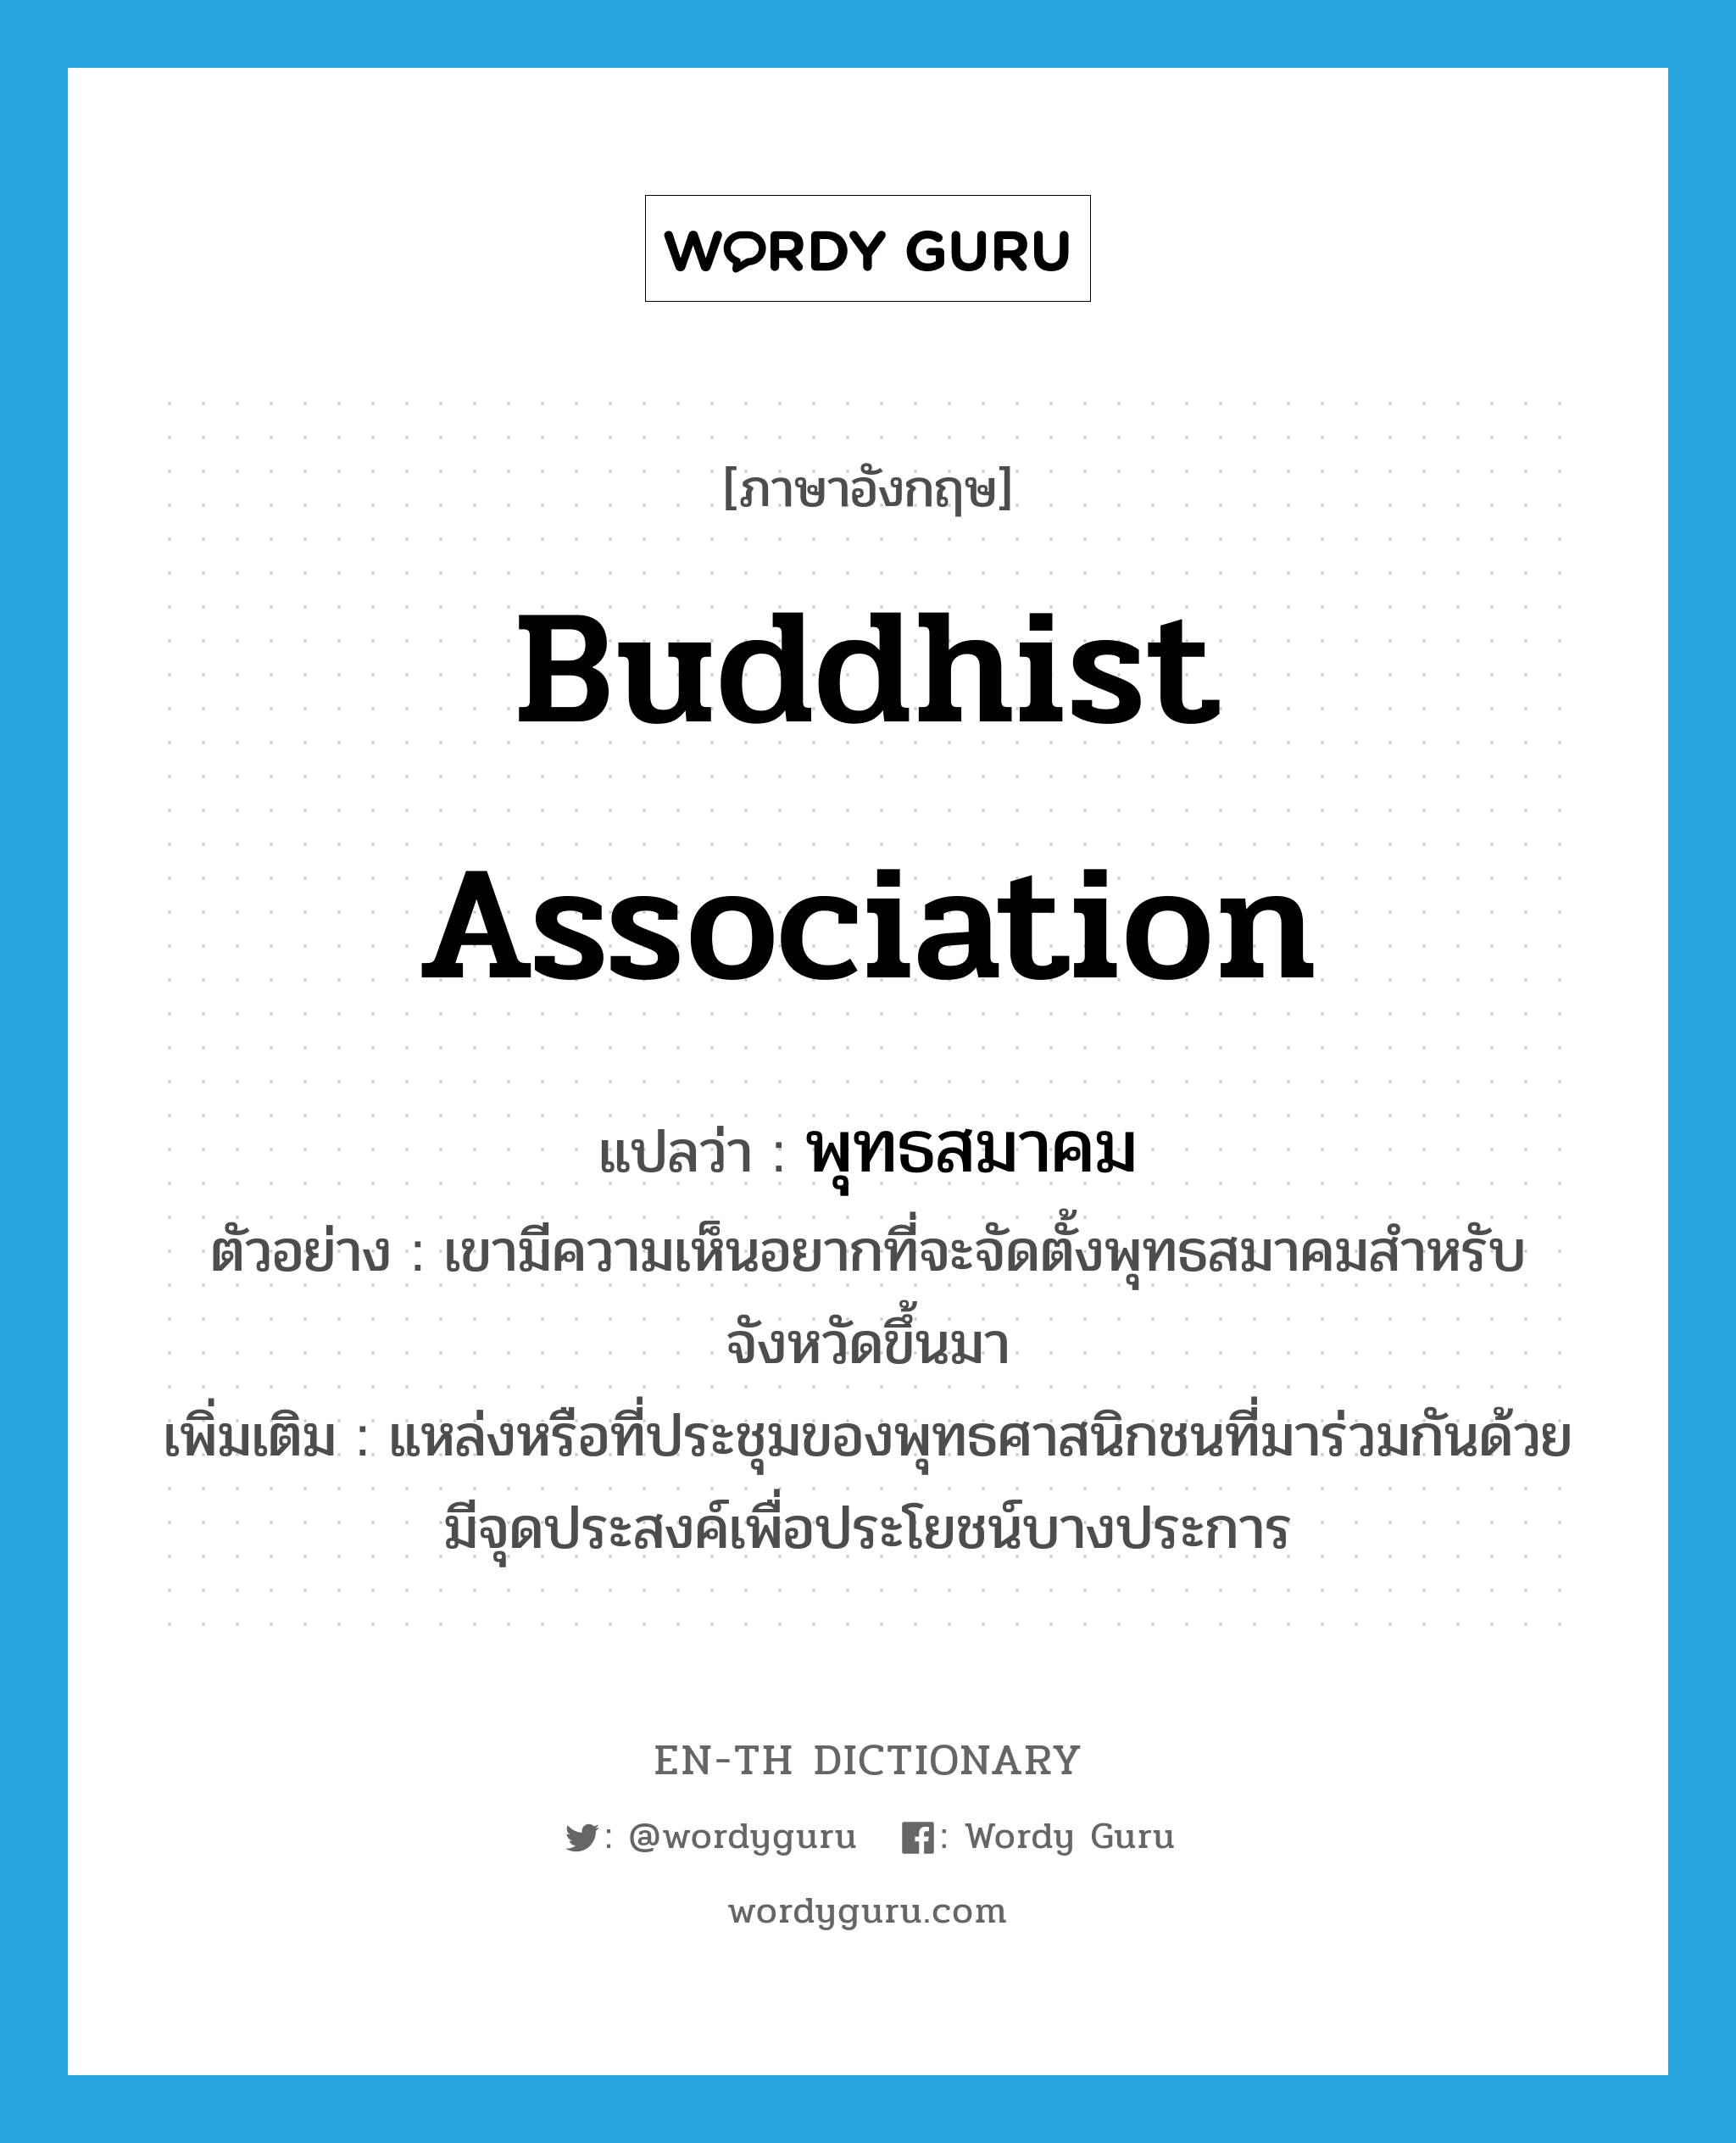 Buddhist association แปลว่า?, คำศัพท์ภาษาอังกฤษ Buddhist association แปลว่า พุทธสมาคม ประเภท N ตัวอย่าง เขามีความเห็นอยากที่จะจัดตั้งพุทธสมาคมสำหรับจังหวัดขึ้นมา เพิ่มเติม แหล่งหรือที่ประชุมของพุทธศาสนิกชนที่มาร่วมกันด้วยมีจุดประสงค์เพื่อประโยชน์บางประการ หมวด N